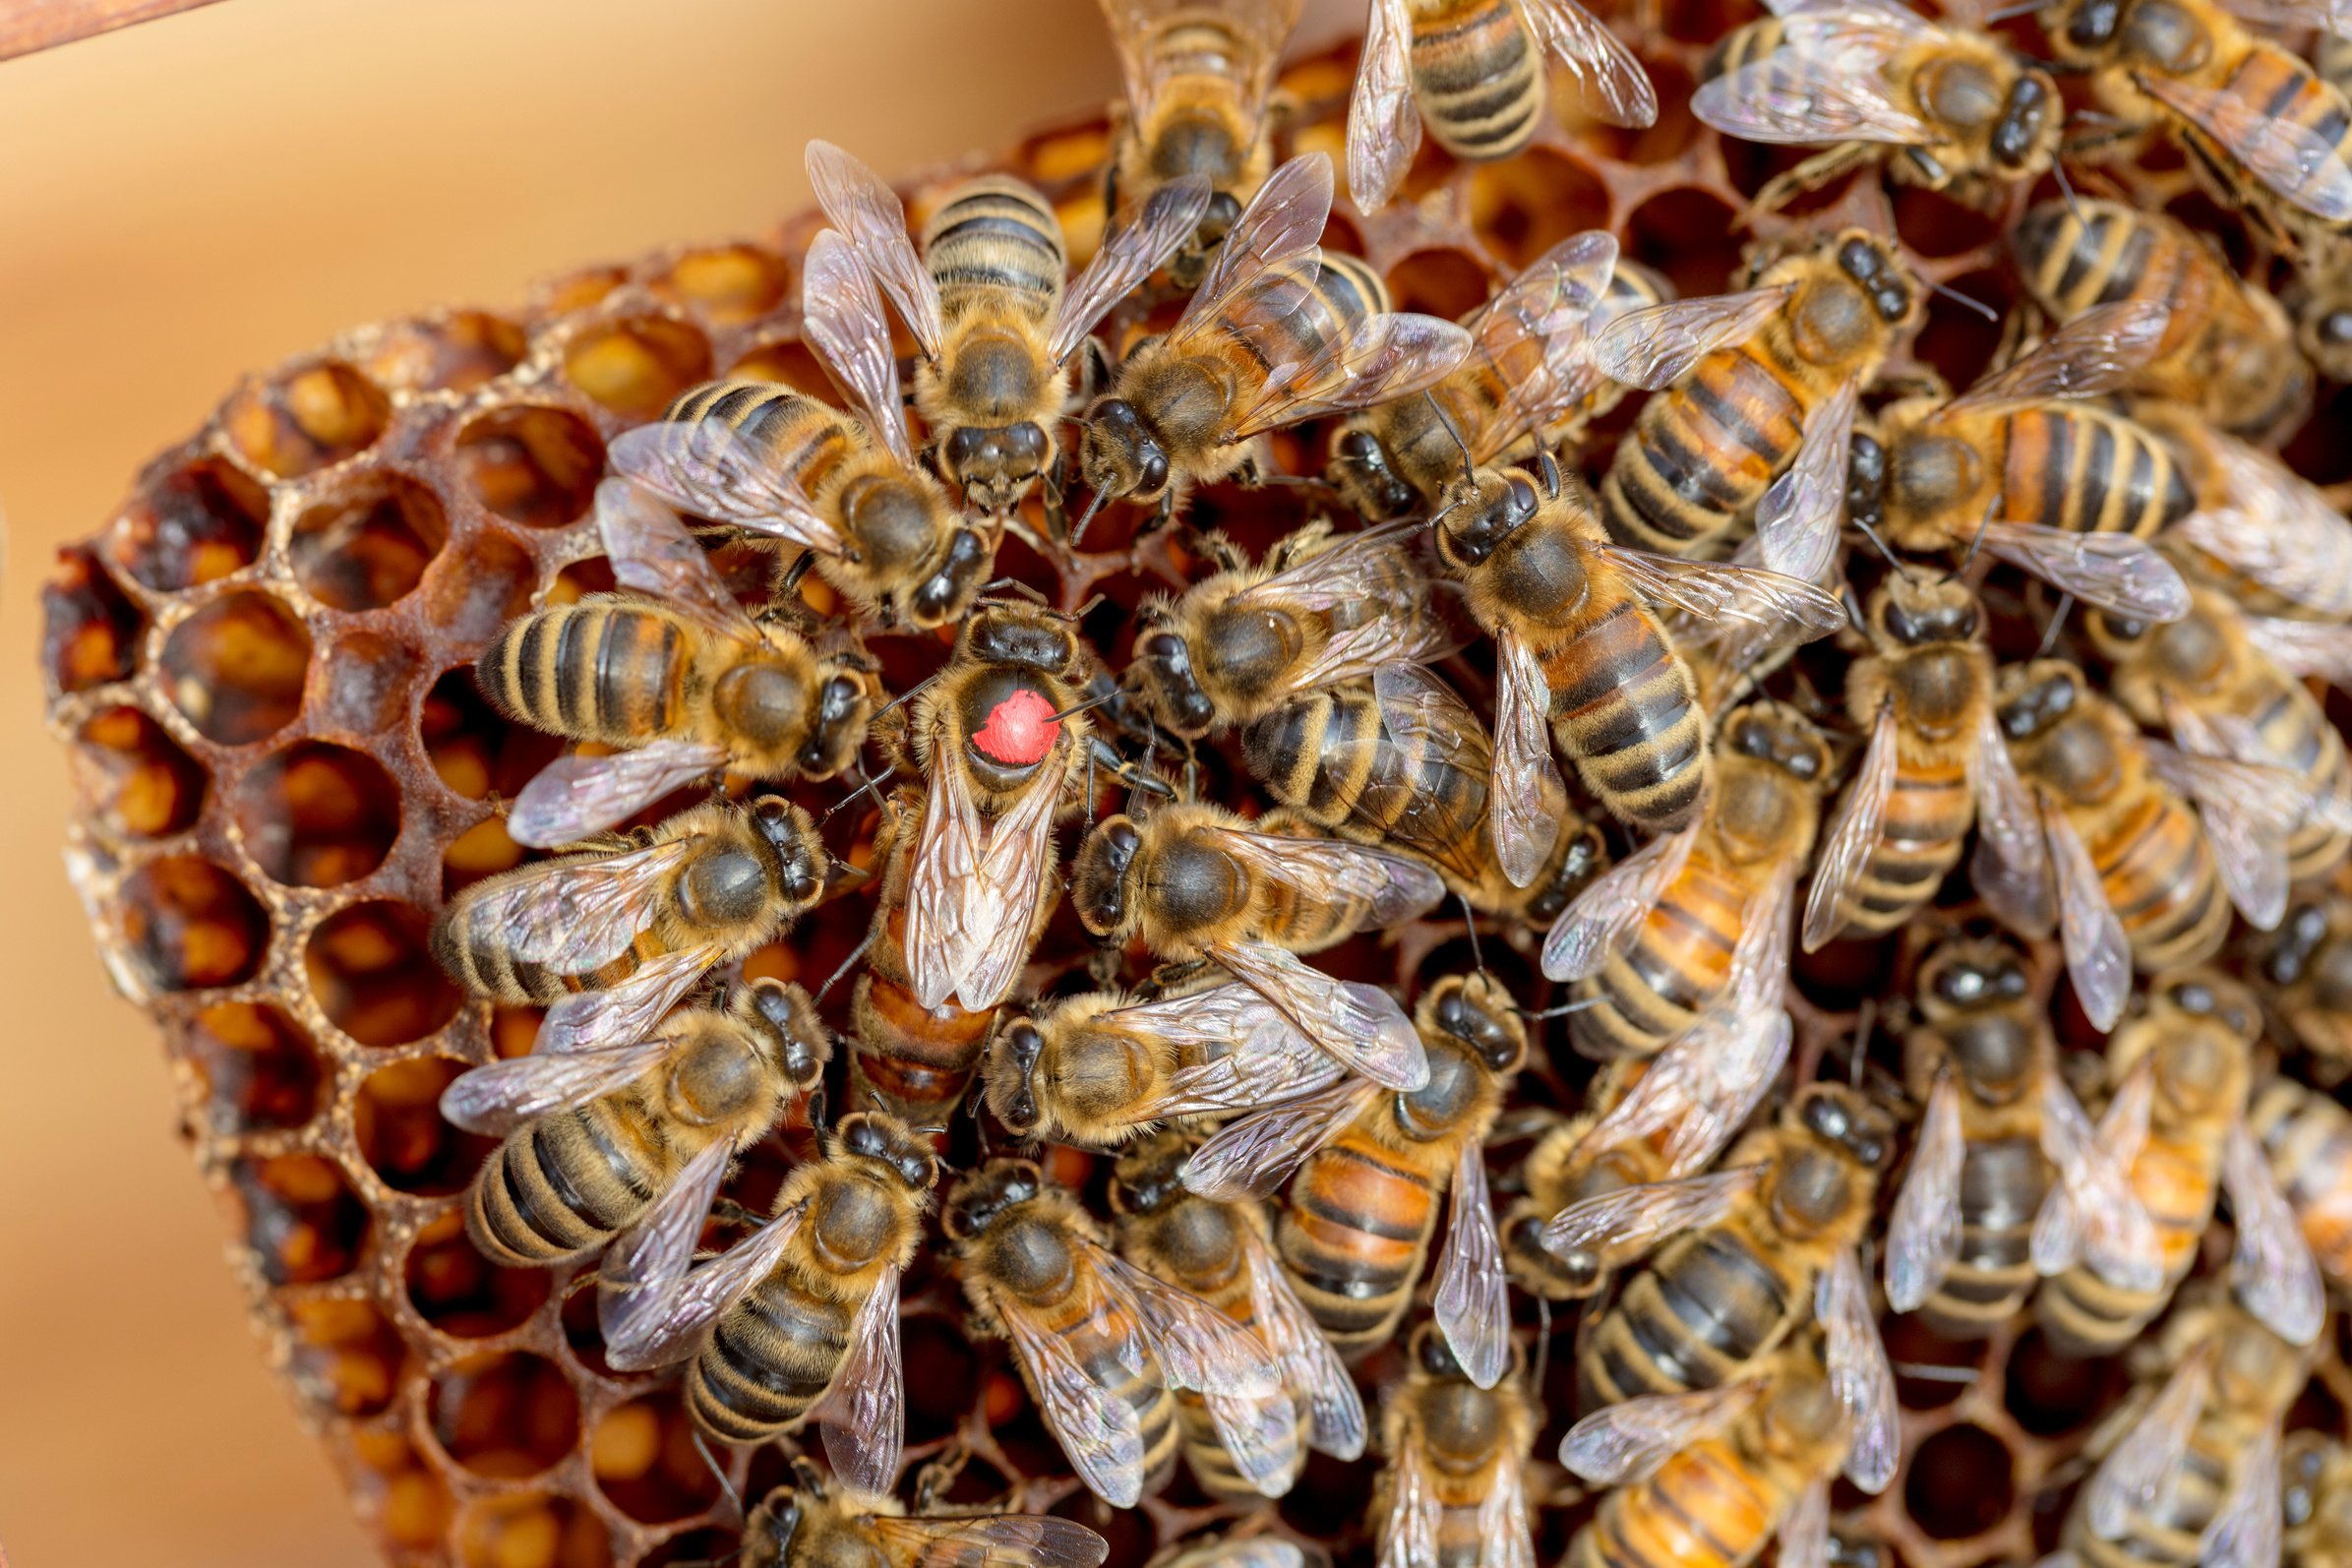 Queen bee on Honeycomb